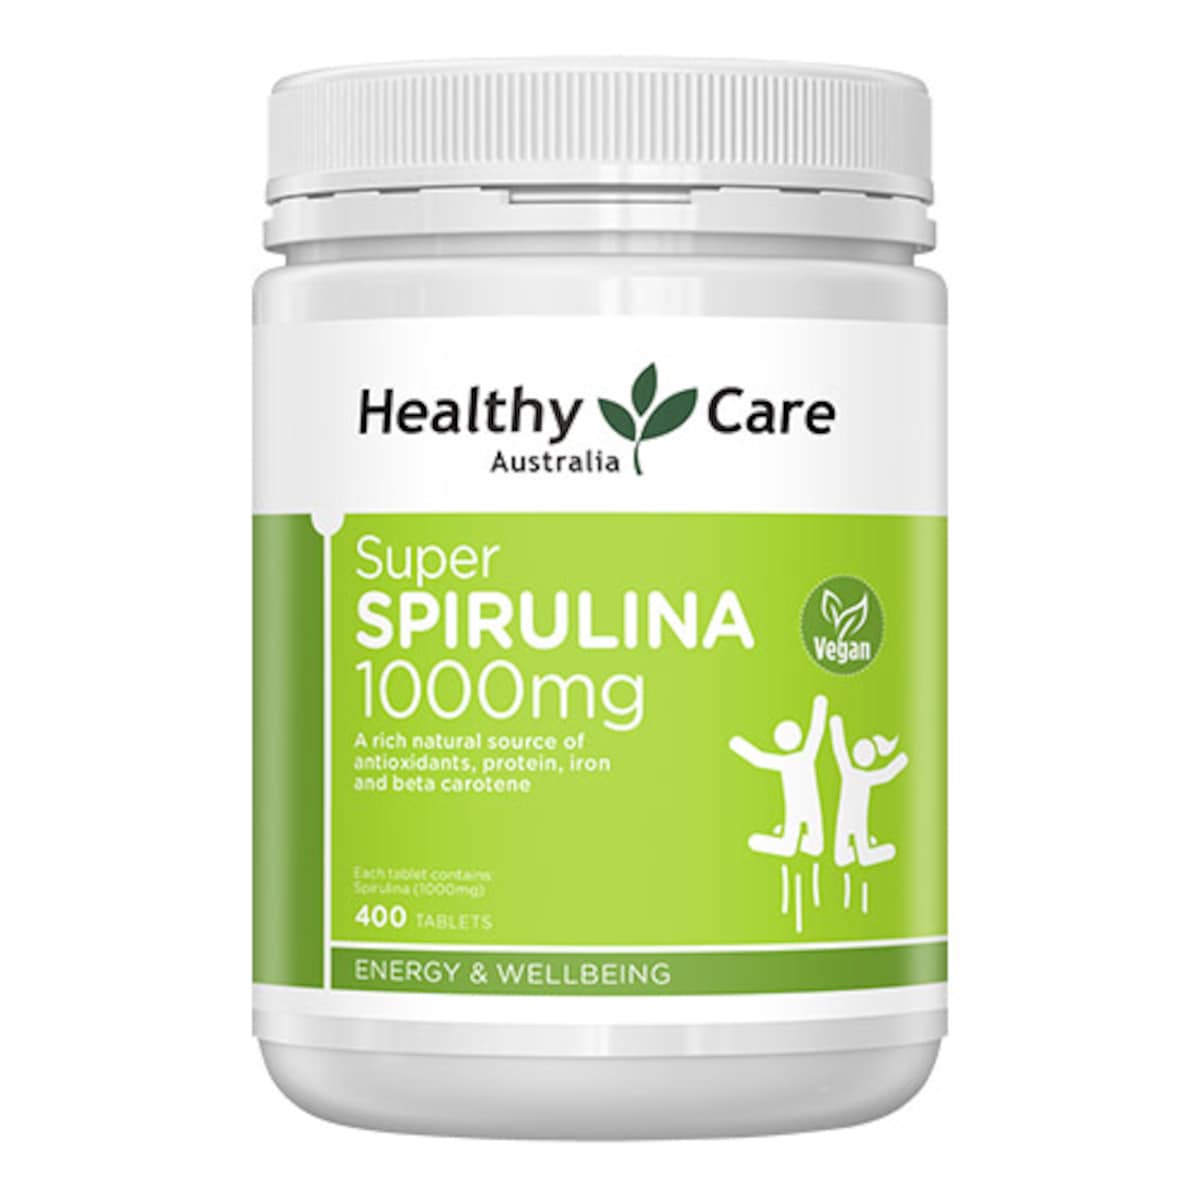 Healthy Care Super Spirulina 400 Tablets